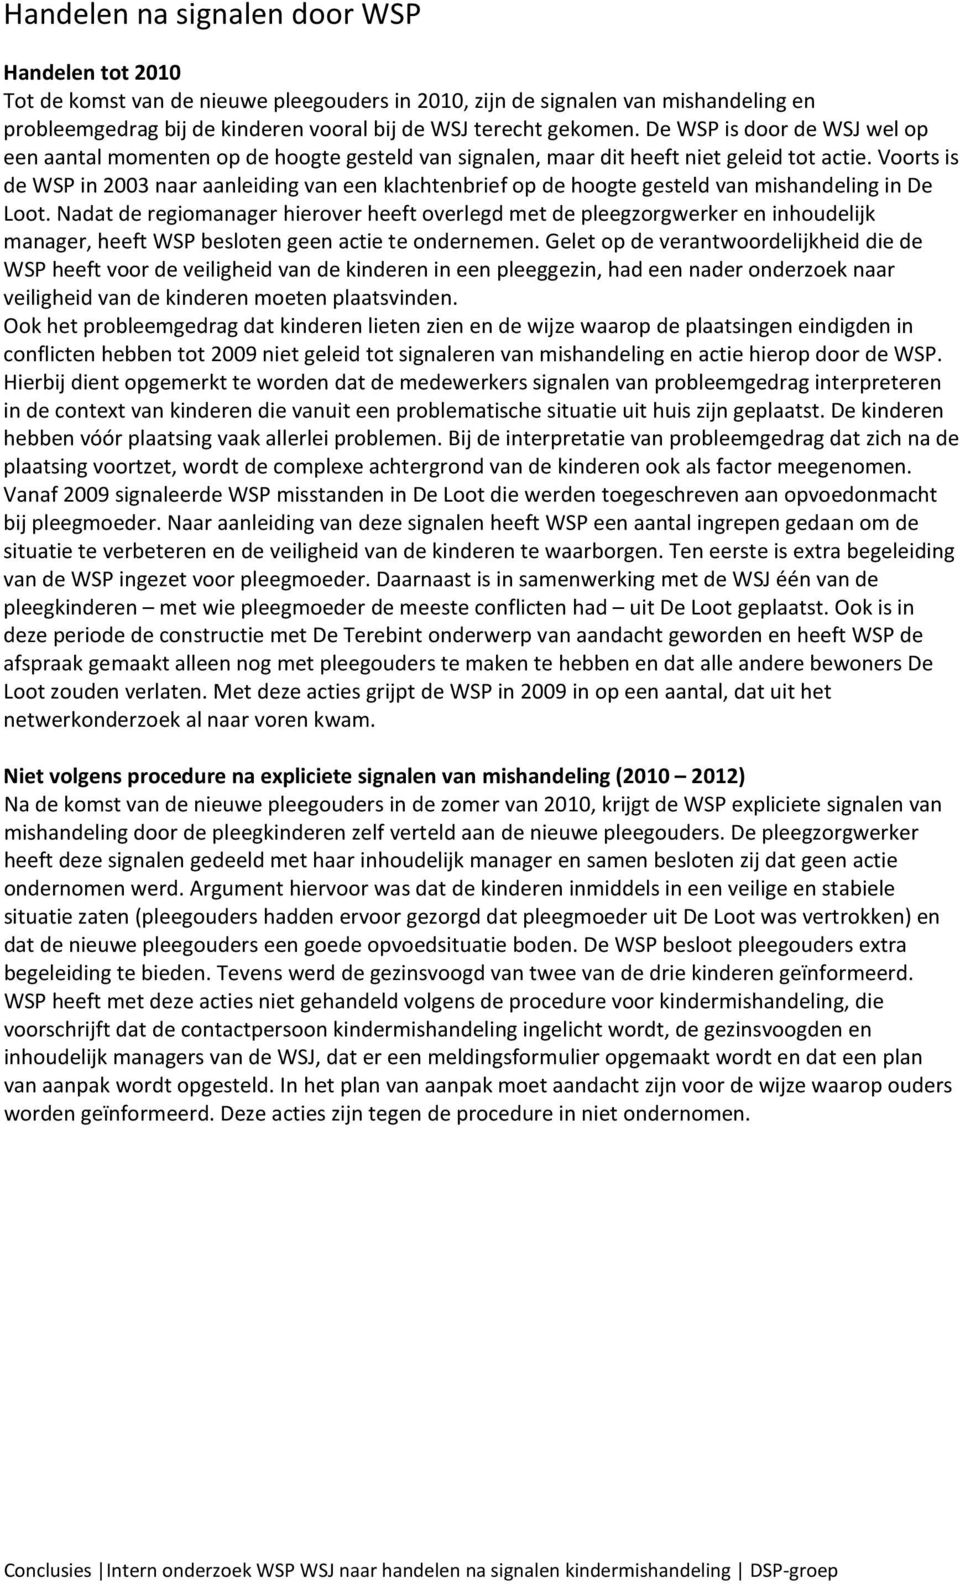 Voorts is de WSP in 2003 naar aanleiding van een klachtenbrief op de hoogte gesteld van mishandeling in De Loot.